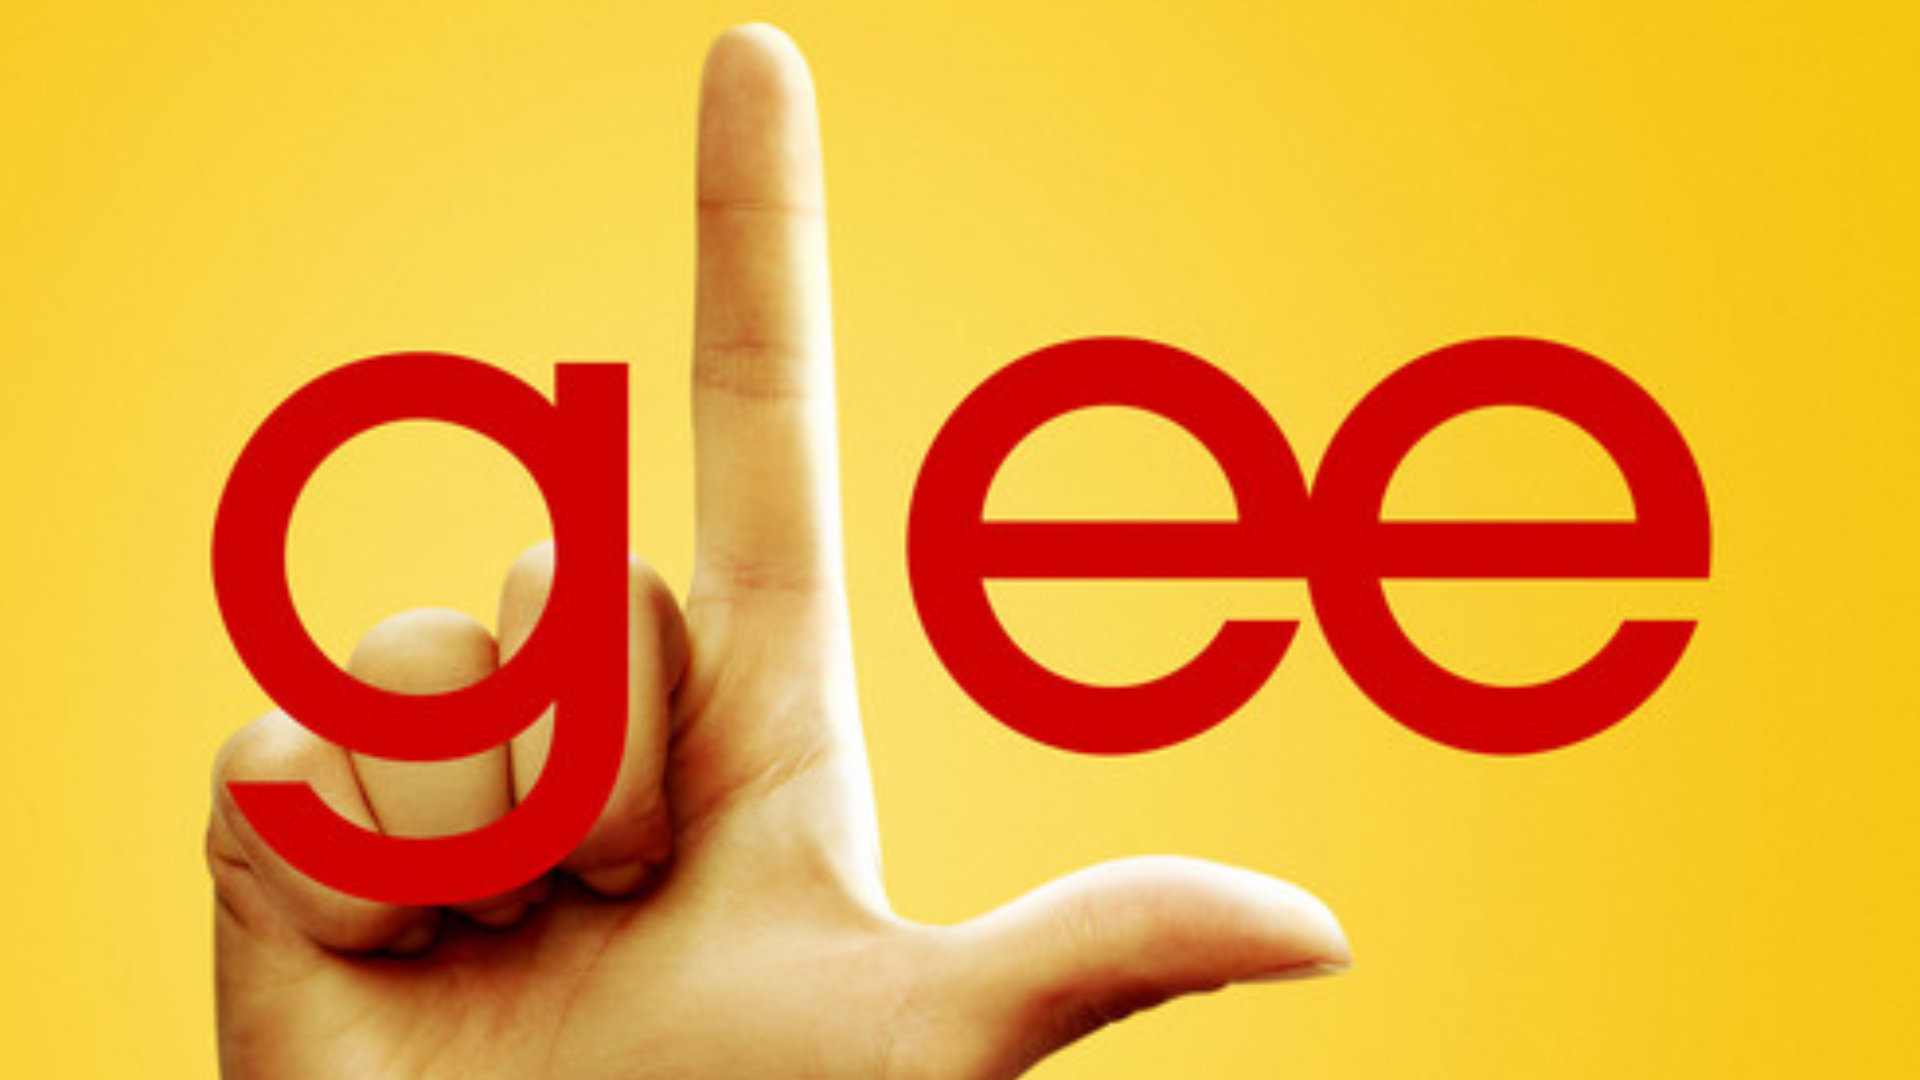 Glee Logo | vlr.eng.br